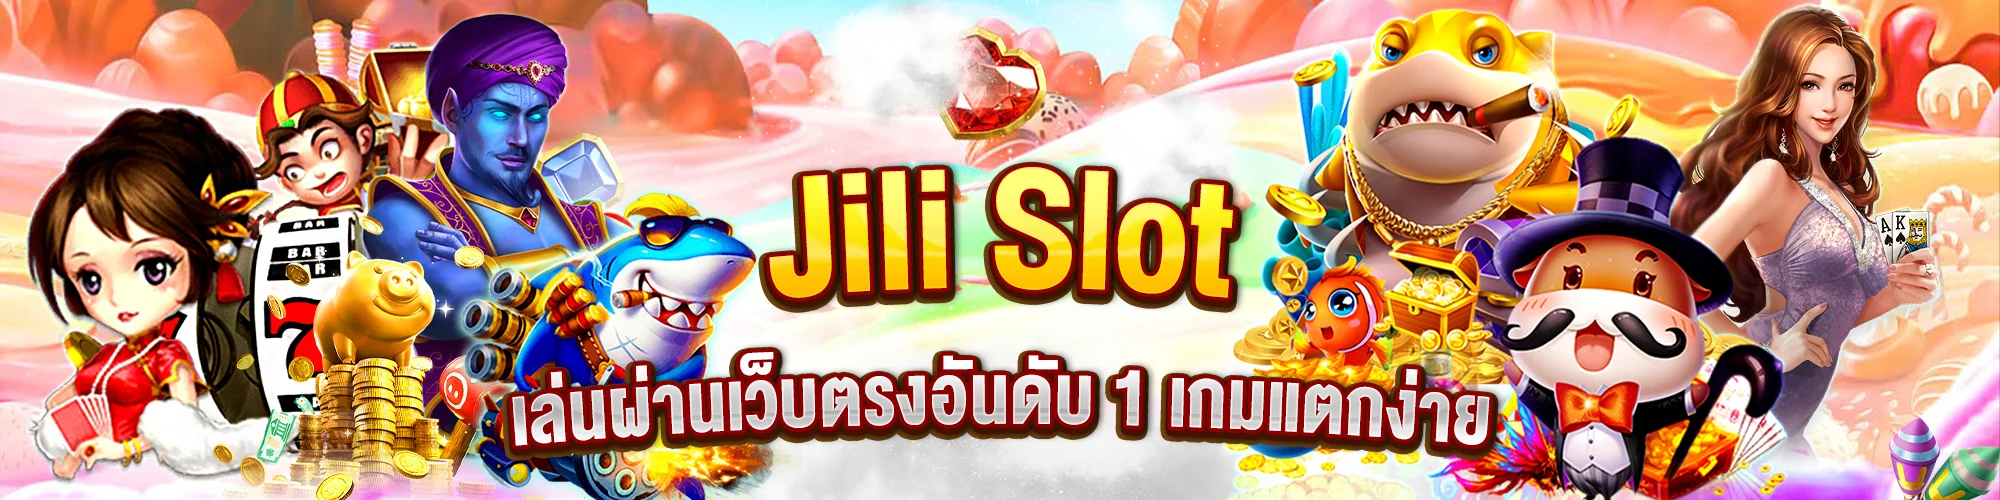 Jili Slot เล่นผ่านเว็บตรงอันดับ 1 เกมแตกง่าย เพียบ แจกโบนัสไม่อั้น